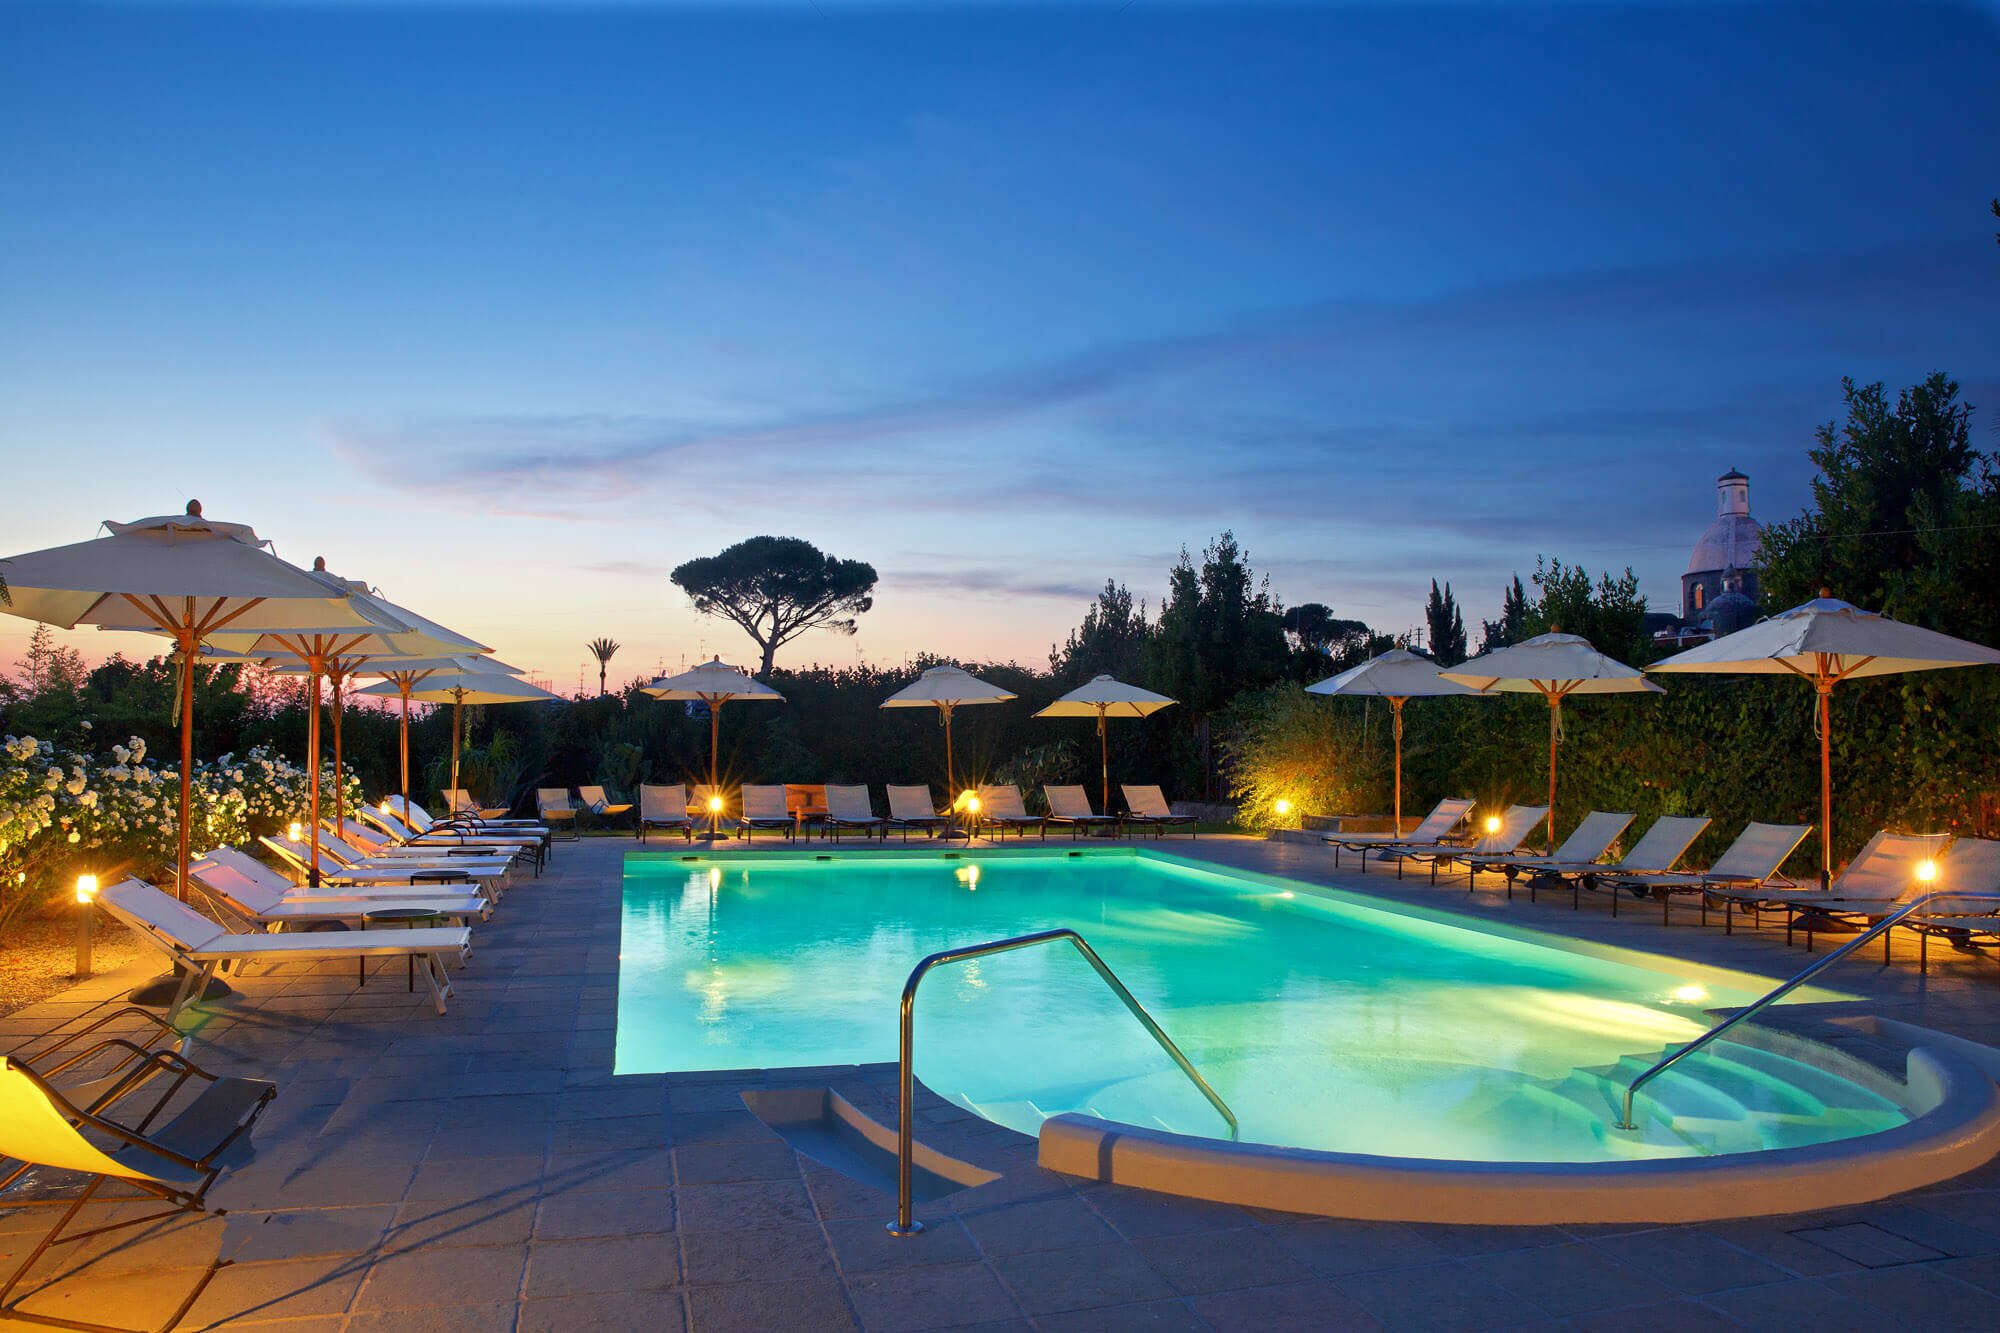 Nighttime pool views at Casa Mariantonia